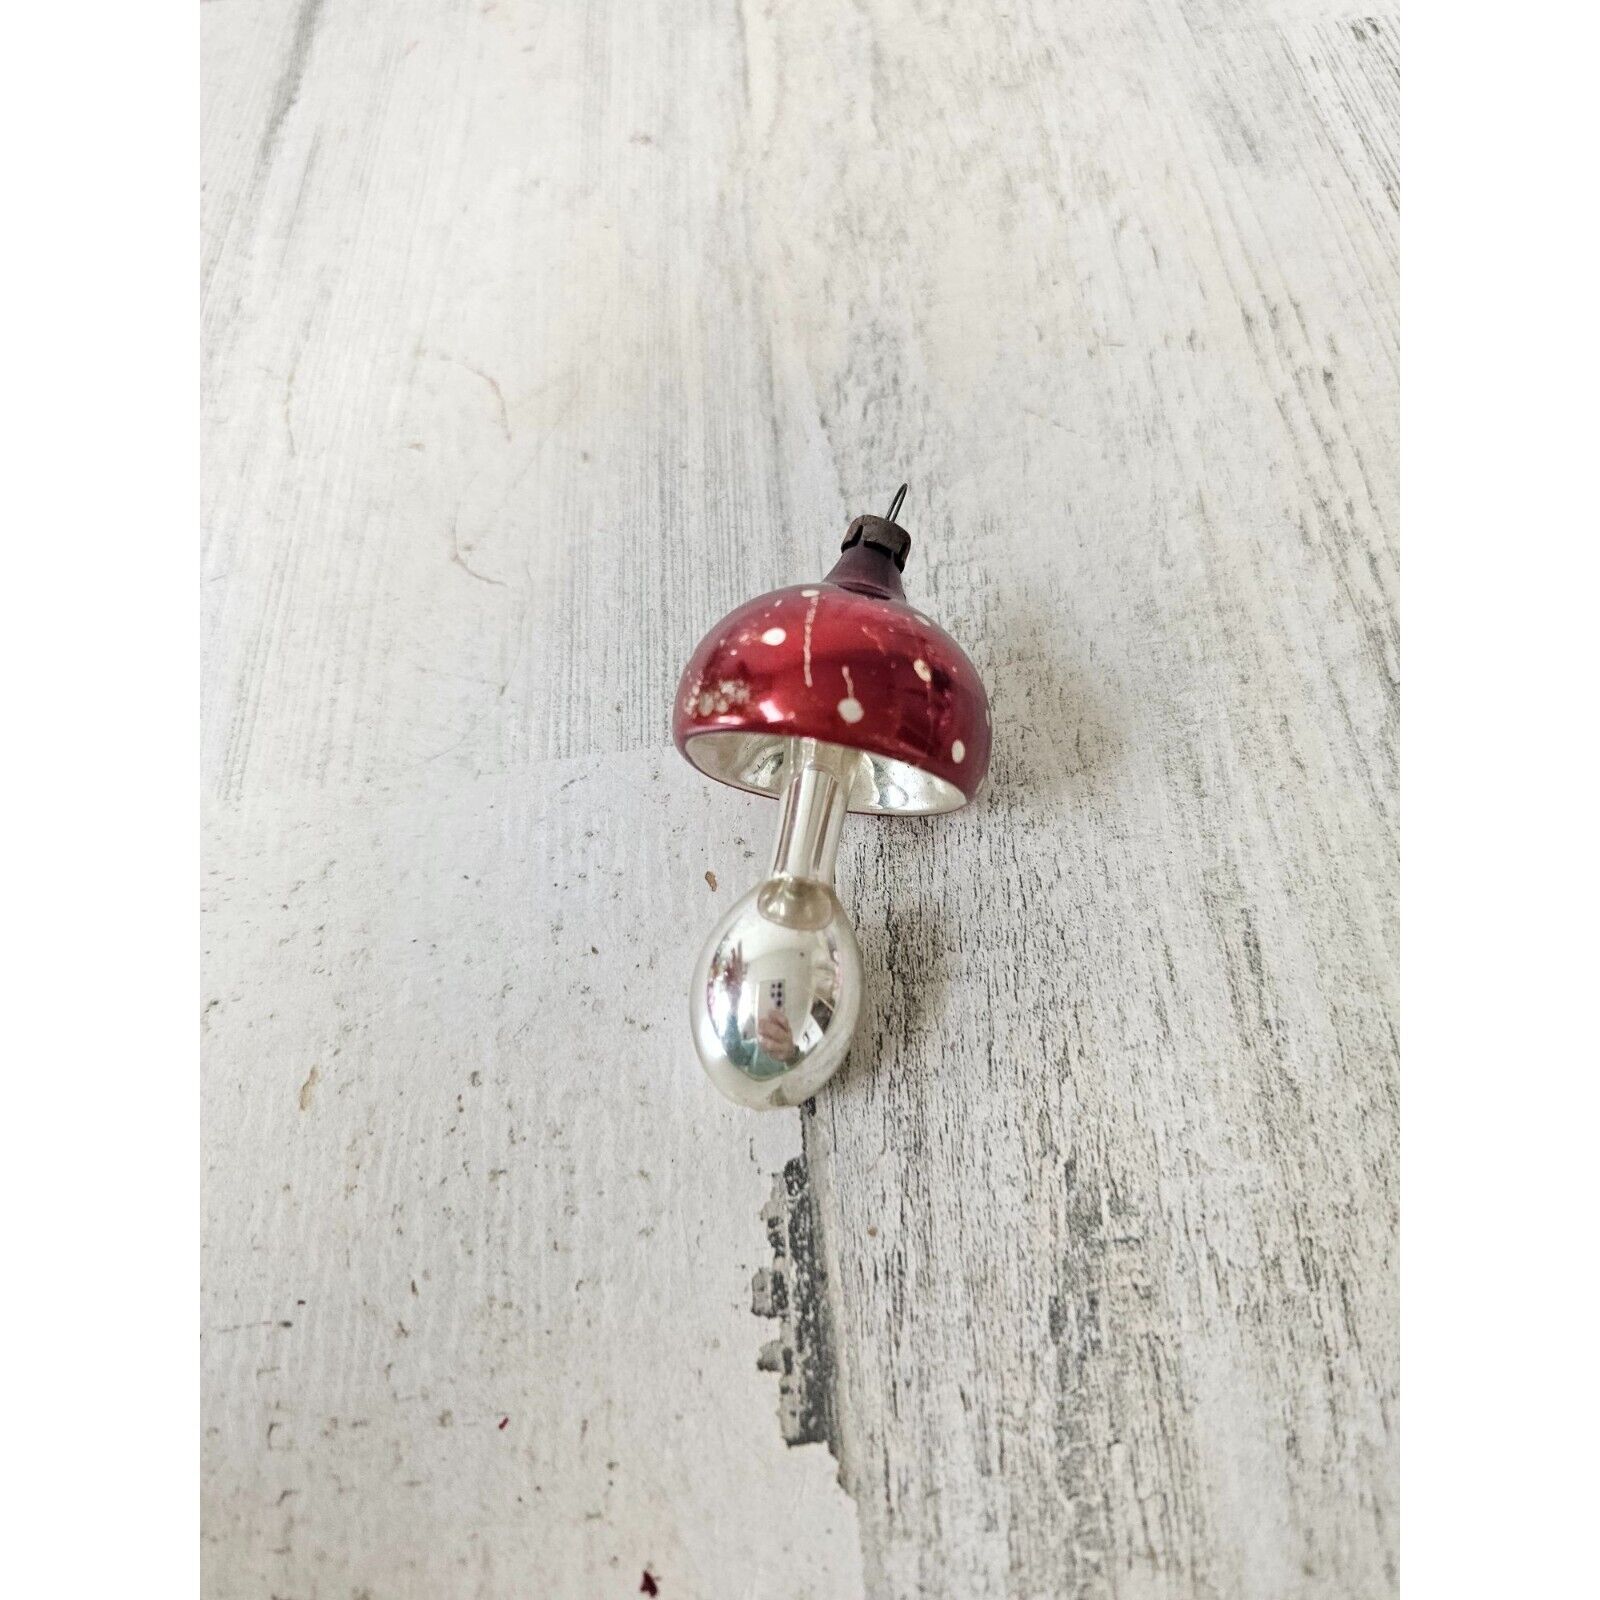 Vintage Mercury glass mushroom mini ornament Xmas tree red